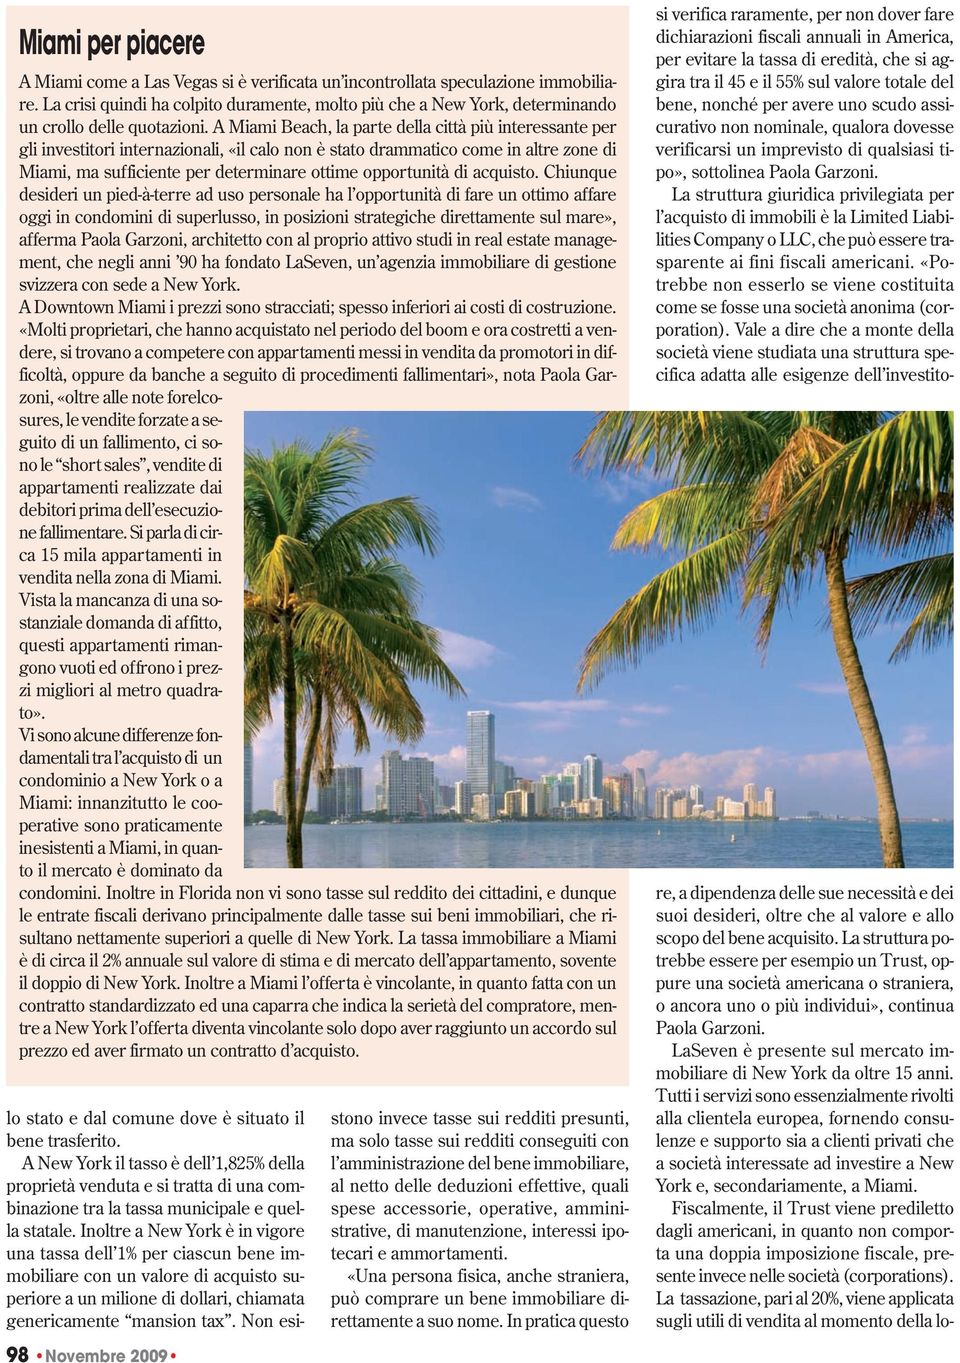 A Miami Beach, la parte della città più interessante per gli investitori internazionali, «il calo non è stato drammatico come in altre zone di Miami, ma sufficiente per determinare ottime opportunità